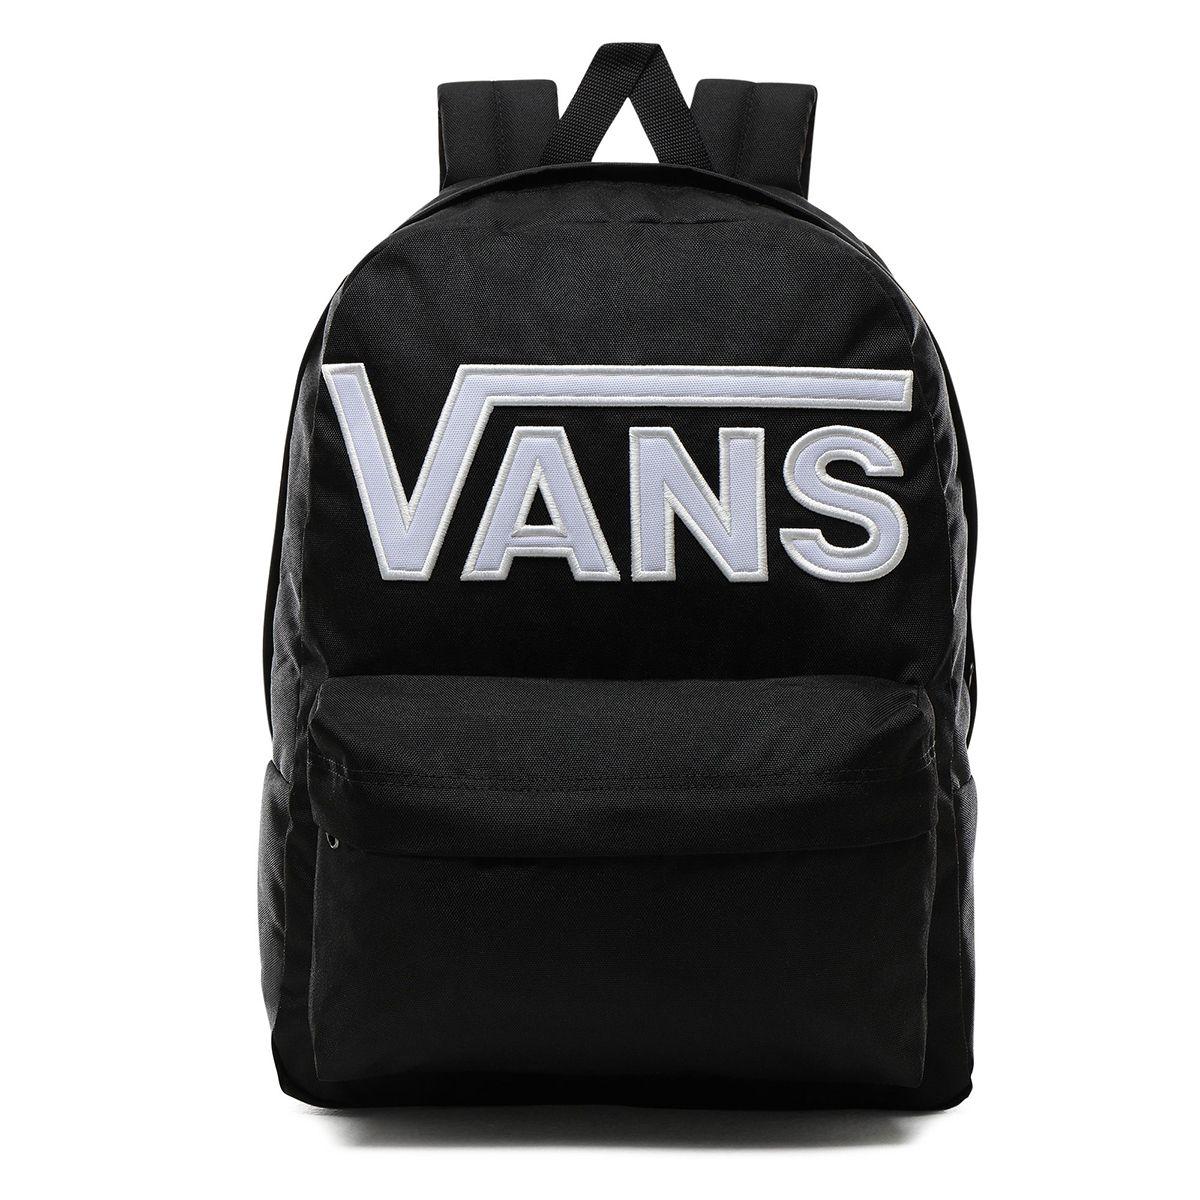 vans backpack black white